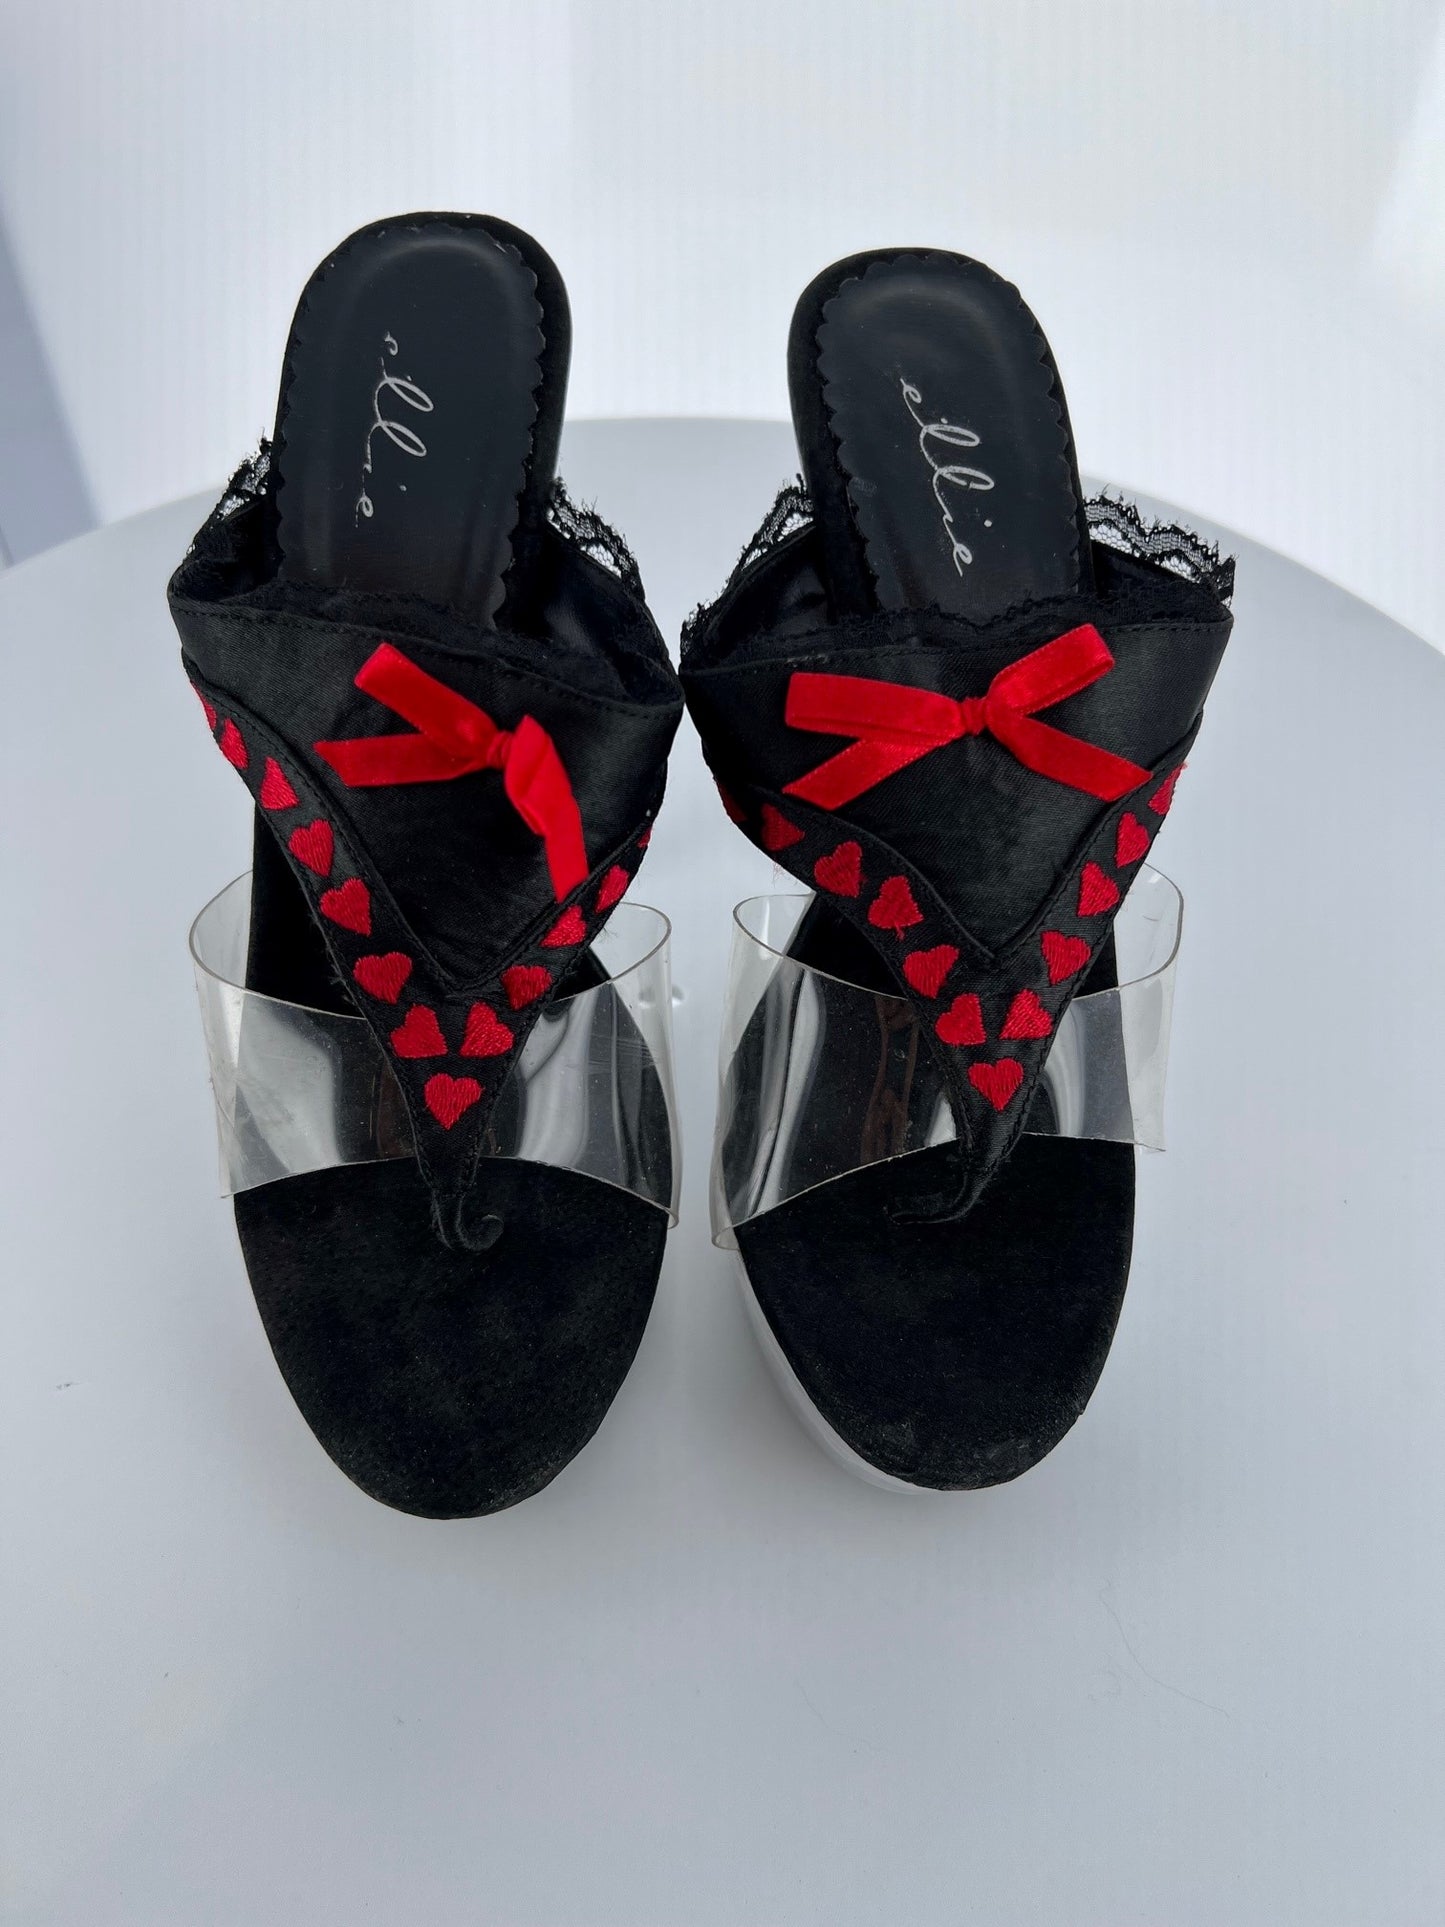 601-THONG Ellie Black Pu High Heel Alternative Footwear Discontinued Sale Stock